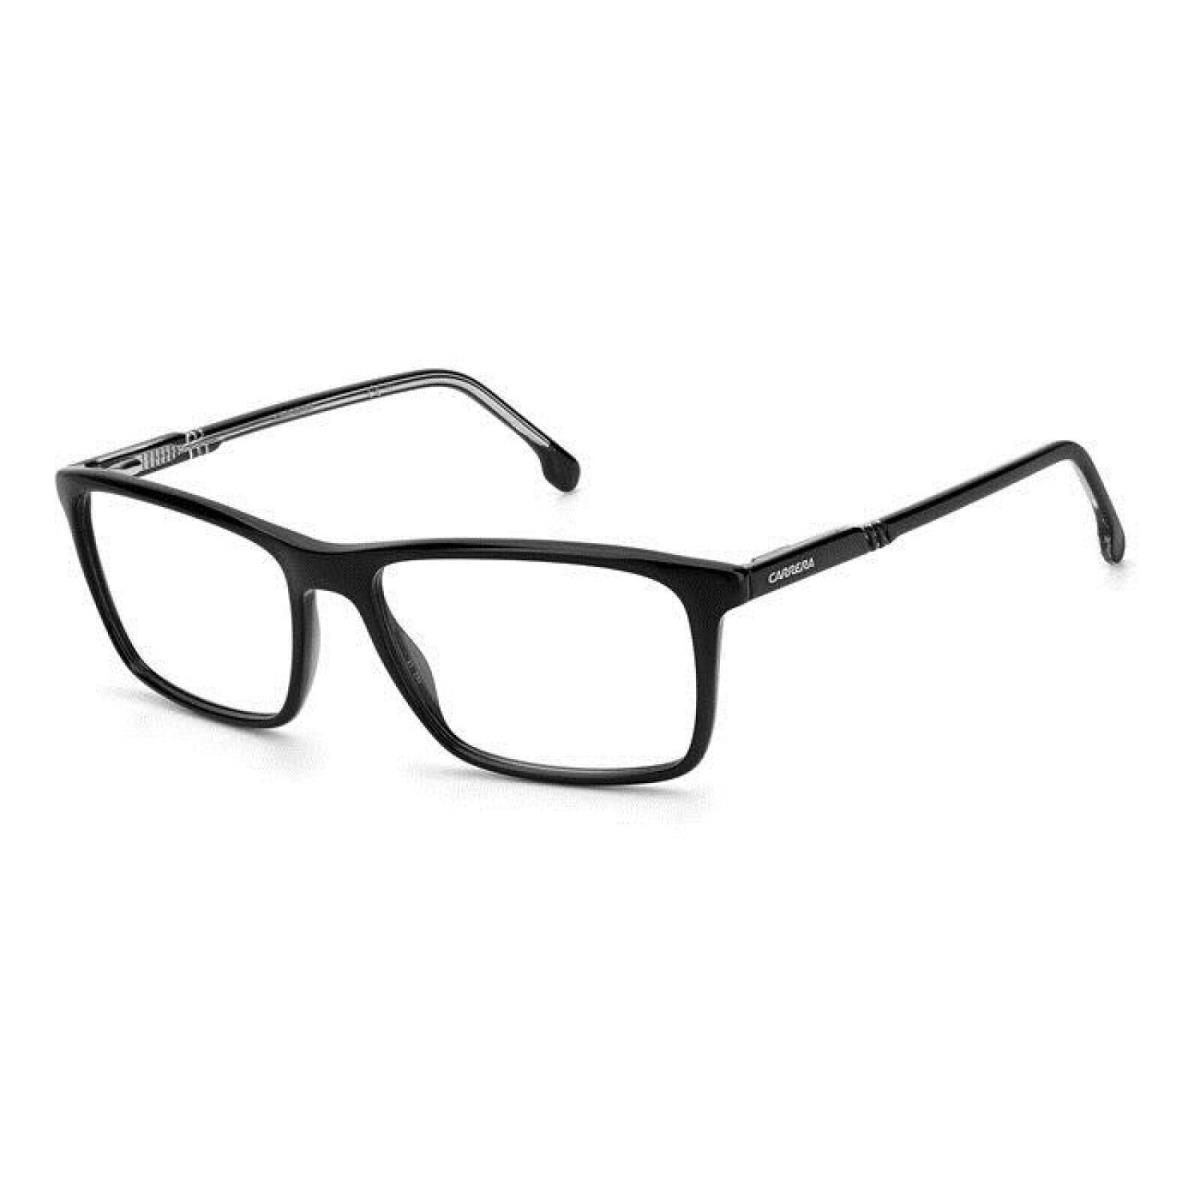 Carrera 8862 Pjp 55mm Blue Men`s Ophthalmic Eyeglasses Frame - Blue, Frame: Black